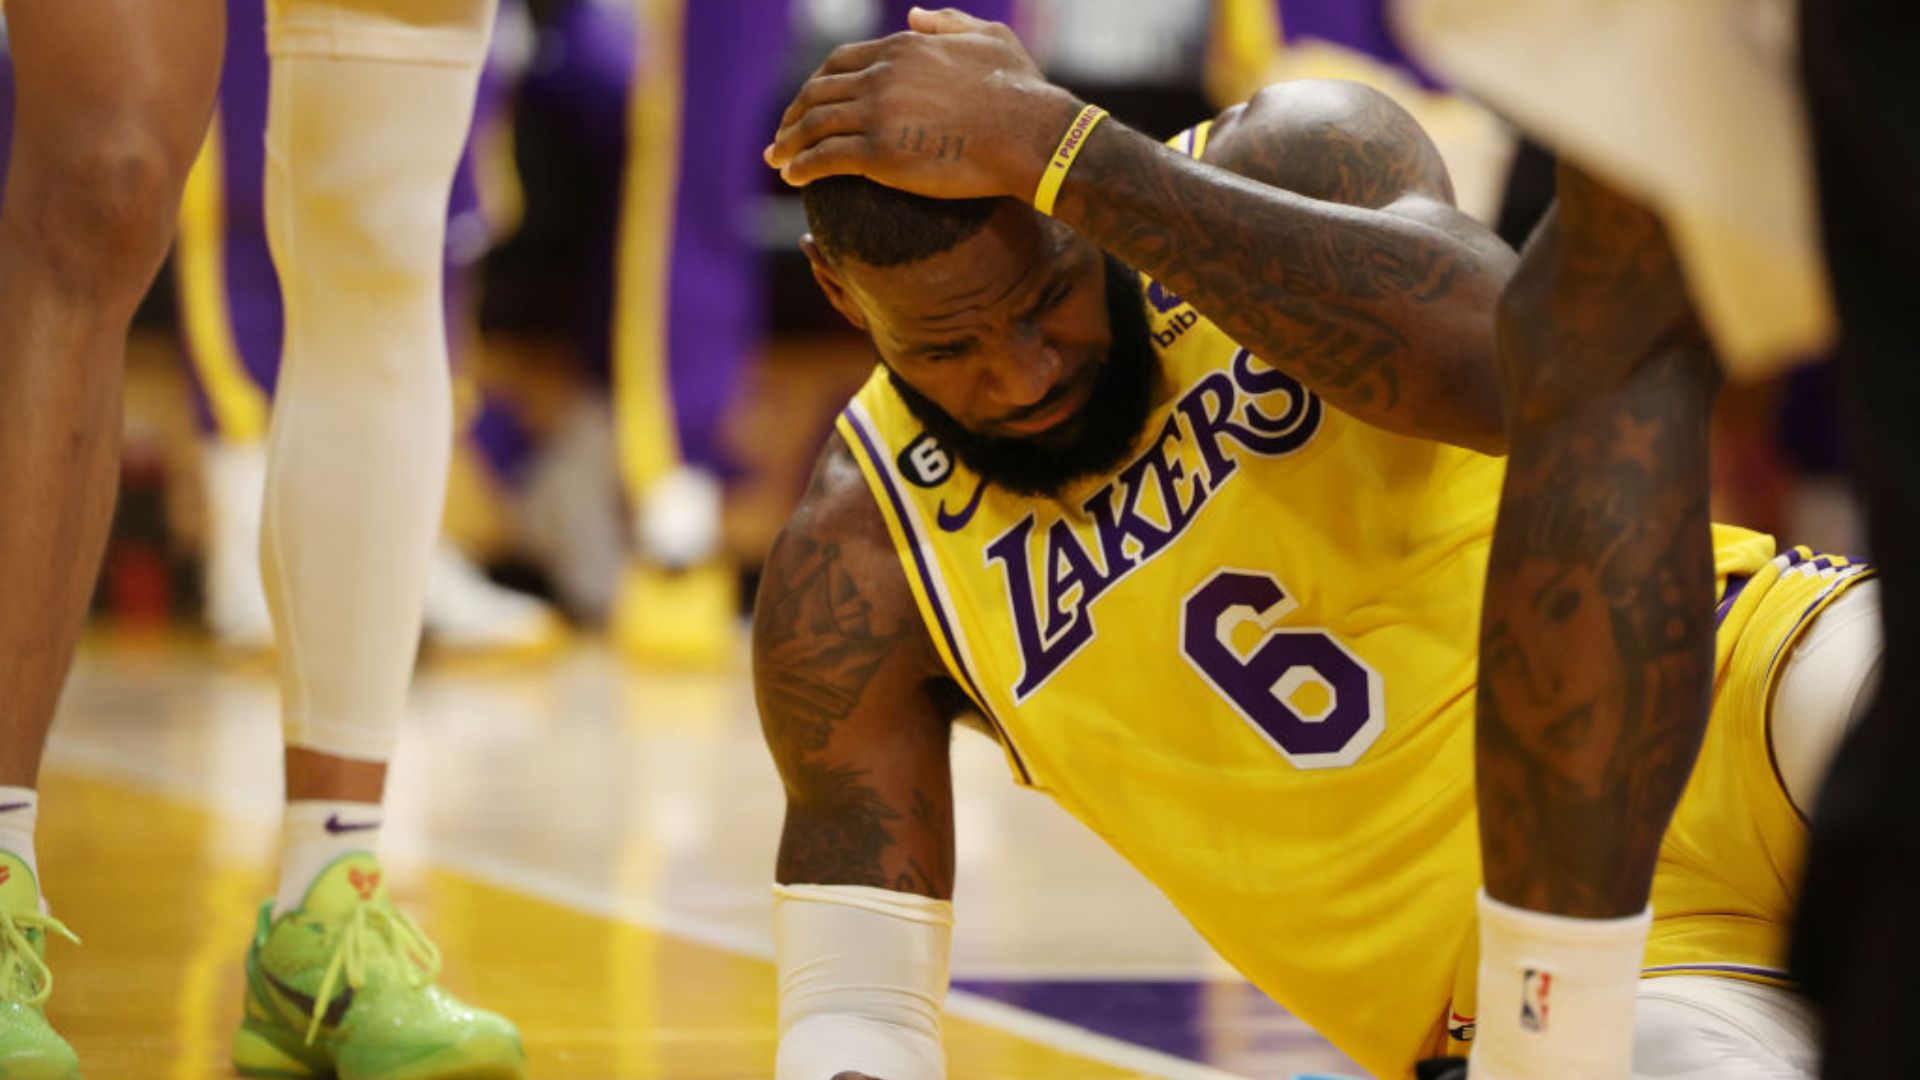 Perto da eliminação, Los Angeles Lakers precisa olhar para o futuro